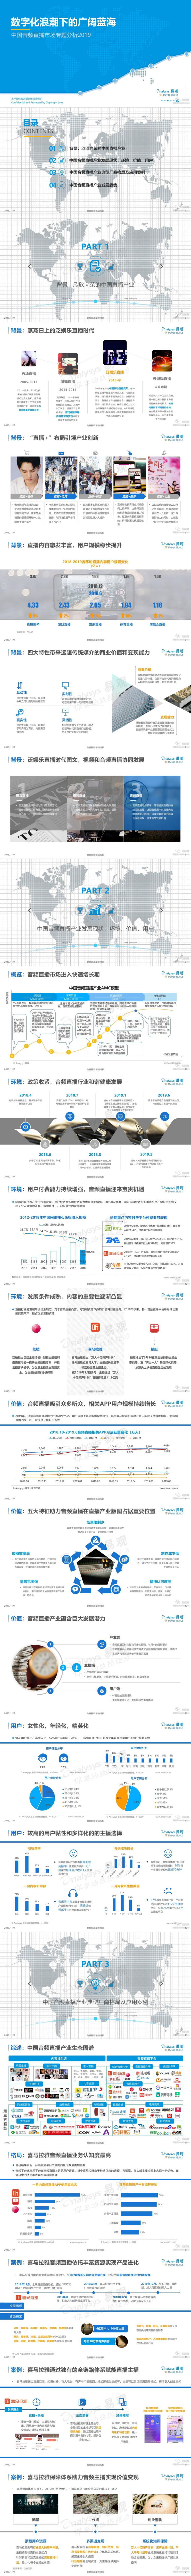 【易观】2019中国音频直播市场专题分析_0.jpg